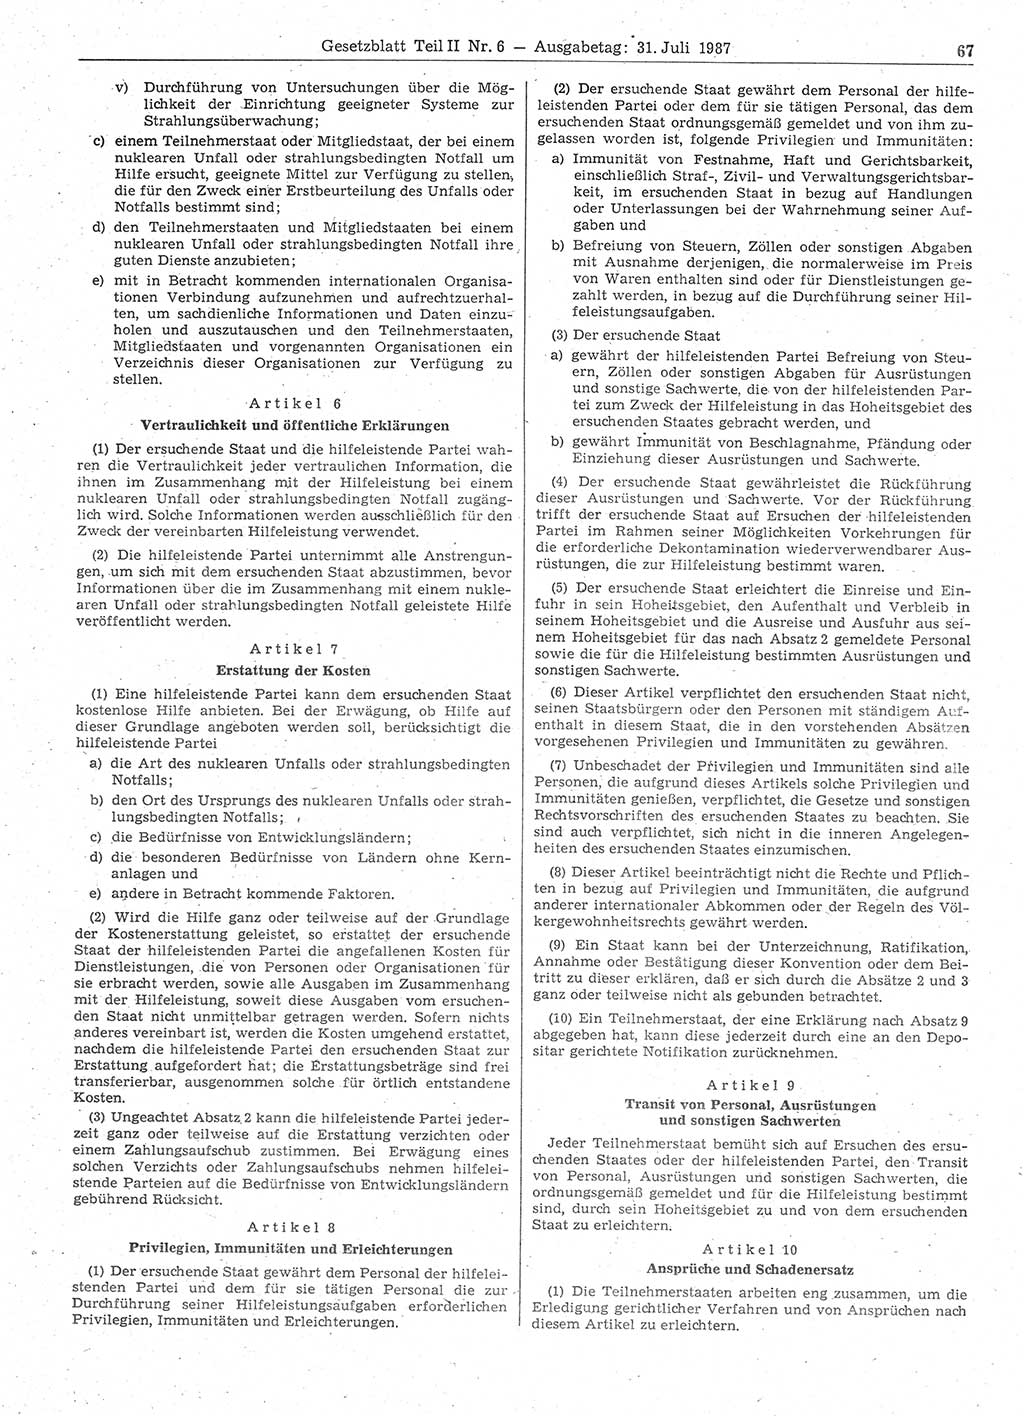 Gesetzblatt (GBl.) der Deutschen Demokratischen Republik (DDR) Teil ⅠⅠ 1987, Seite 67 (GBl. DDR ⅠⅠ 1987, S. 67)